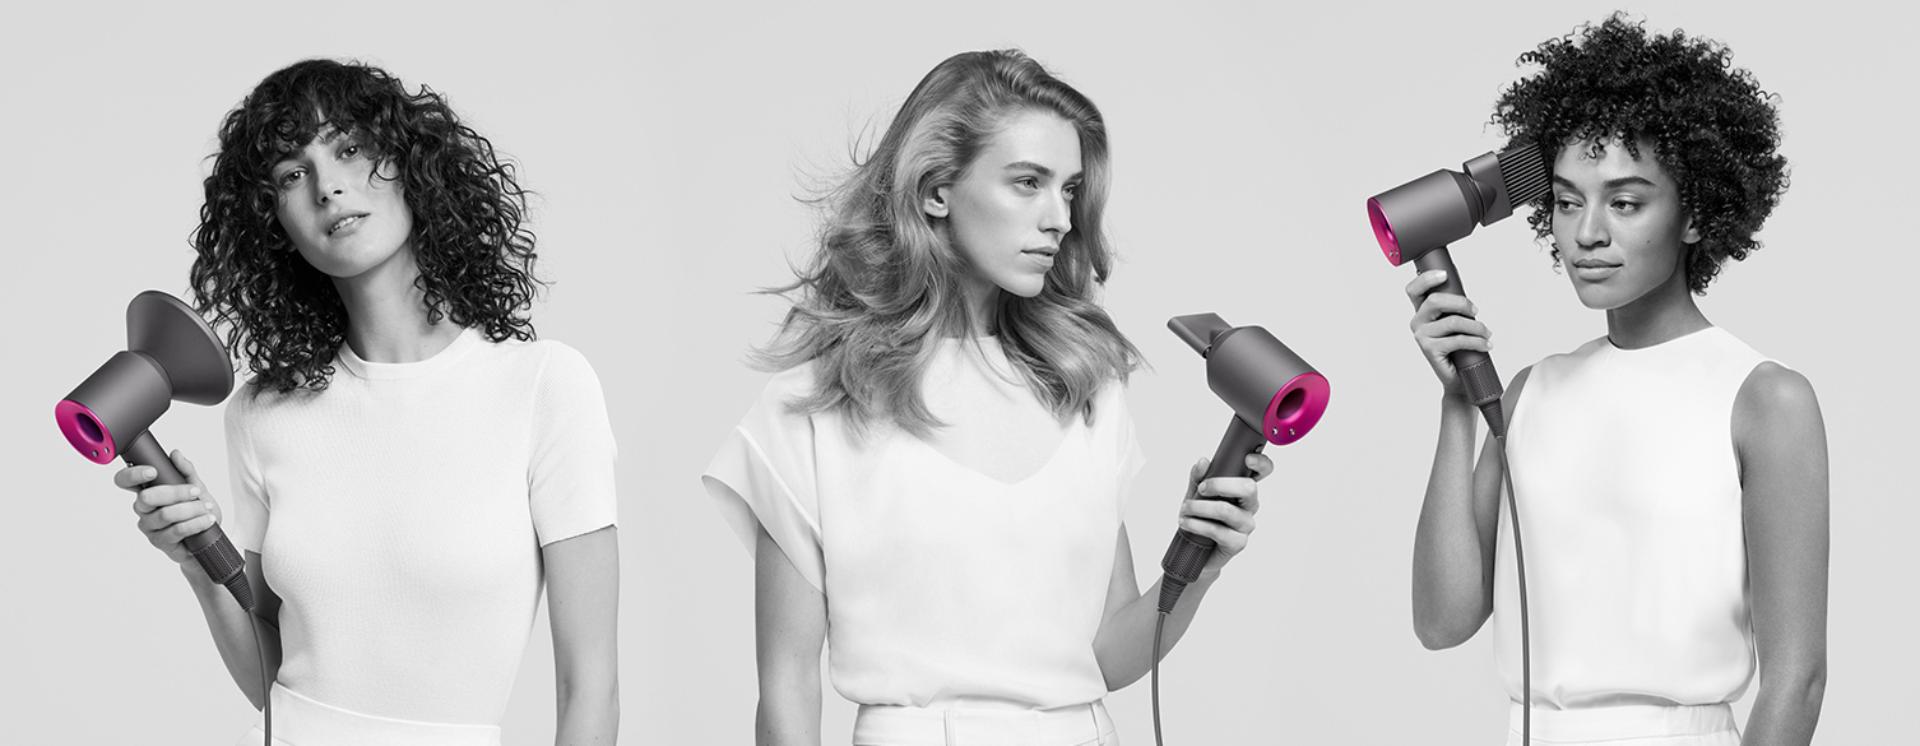 Dyson Supersonic saç kurutma makinesini kullanan üç kadın